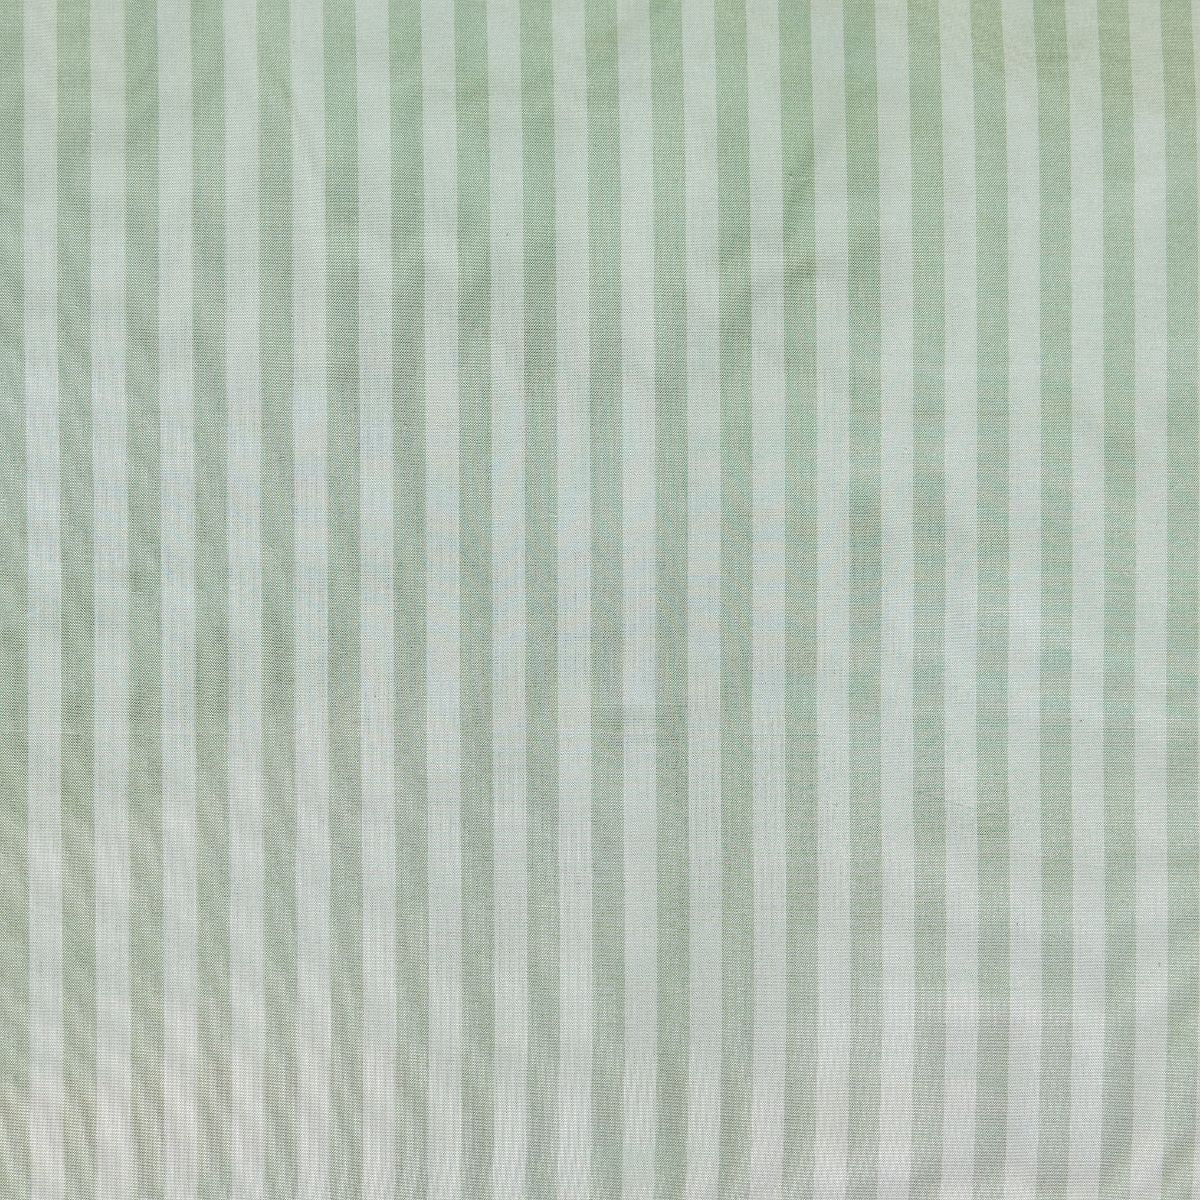 Noelle Stripe in Wintergreen Fabric Swatch